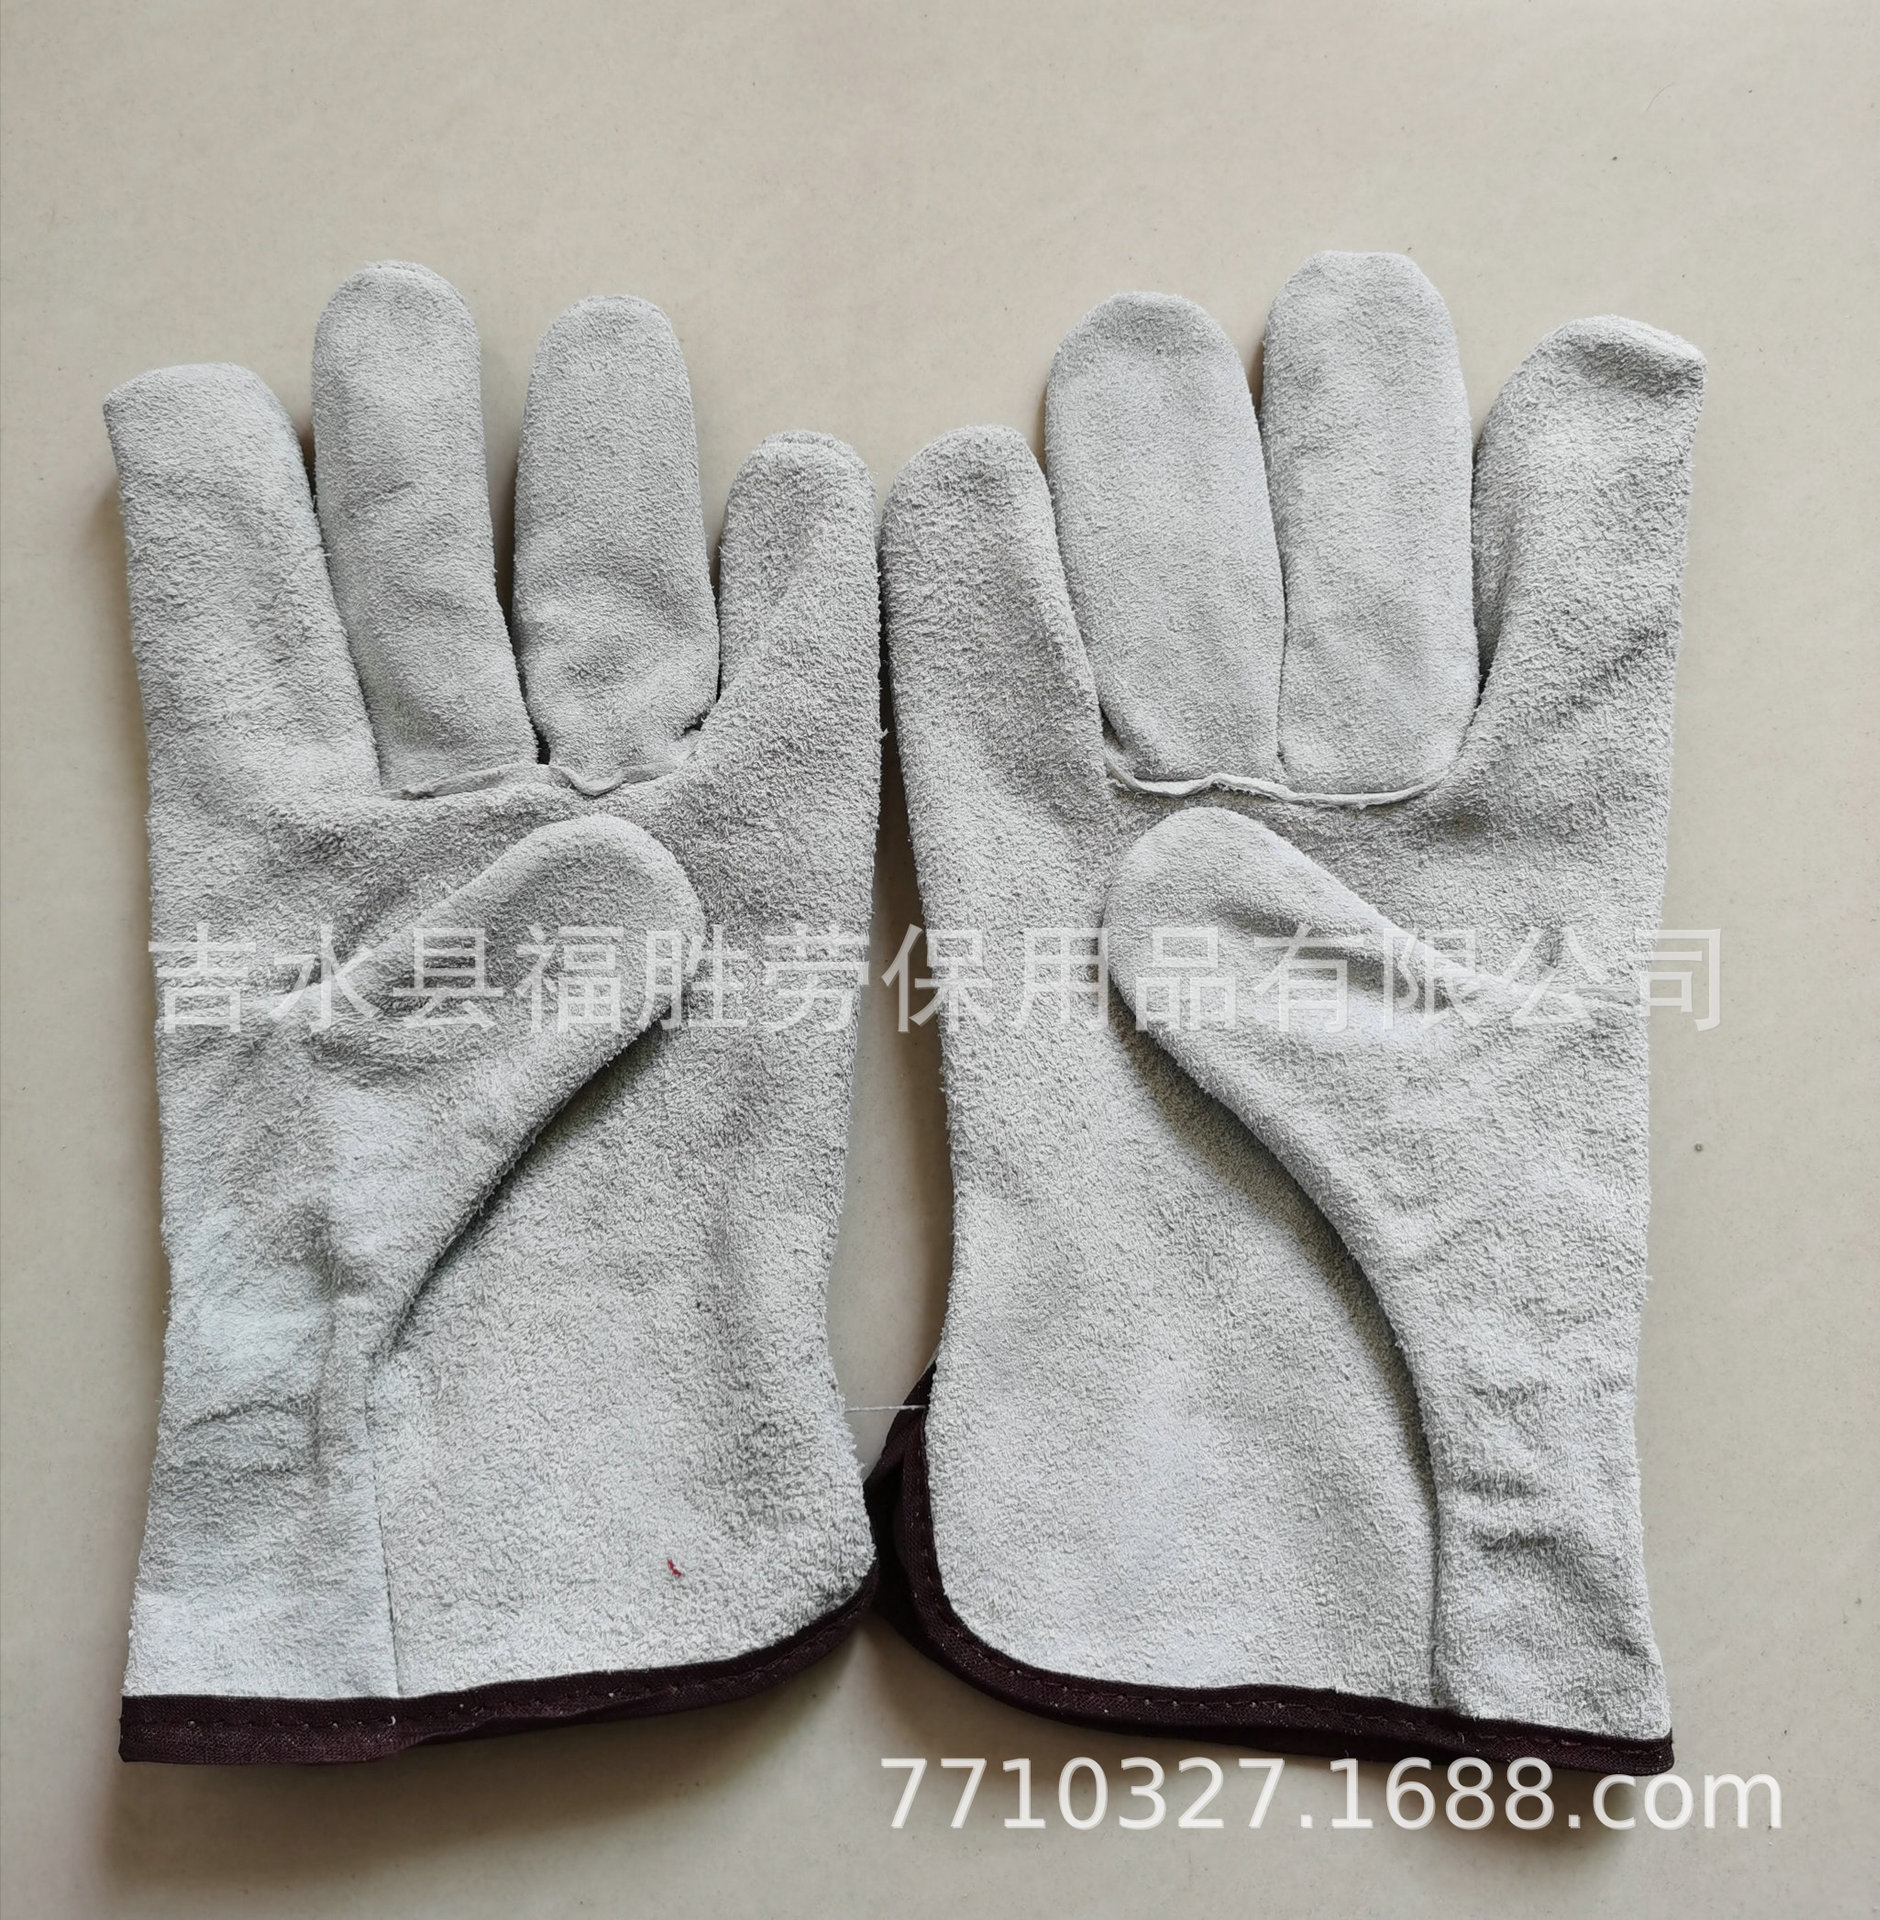 厂家直销供应订做10英寸横指无衬里灰色二层牛皮司机手套|ru